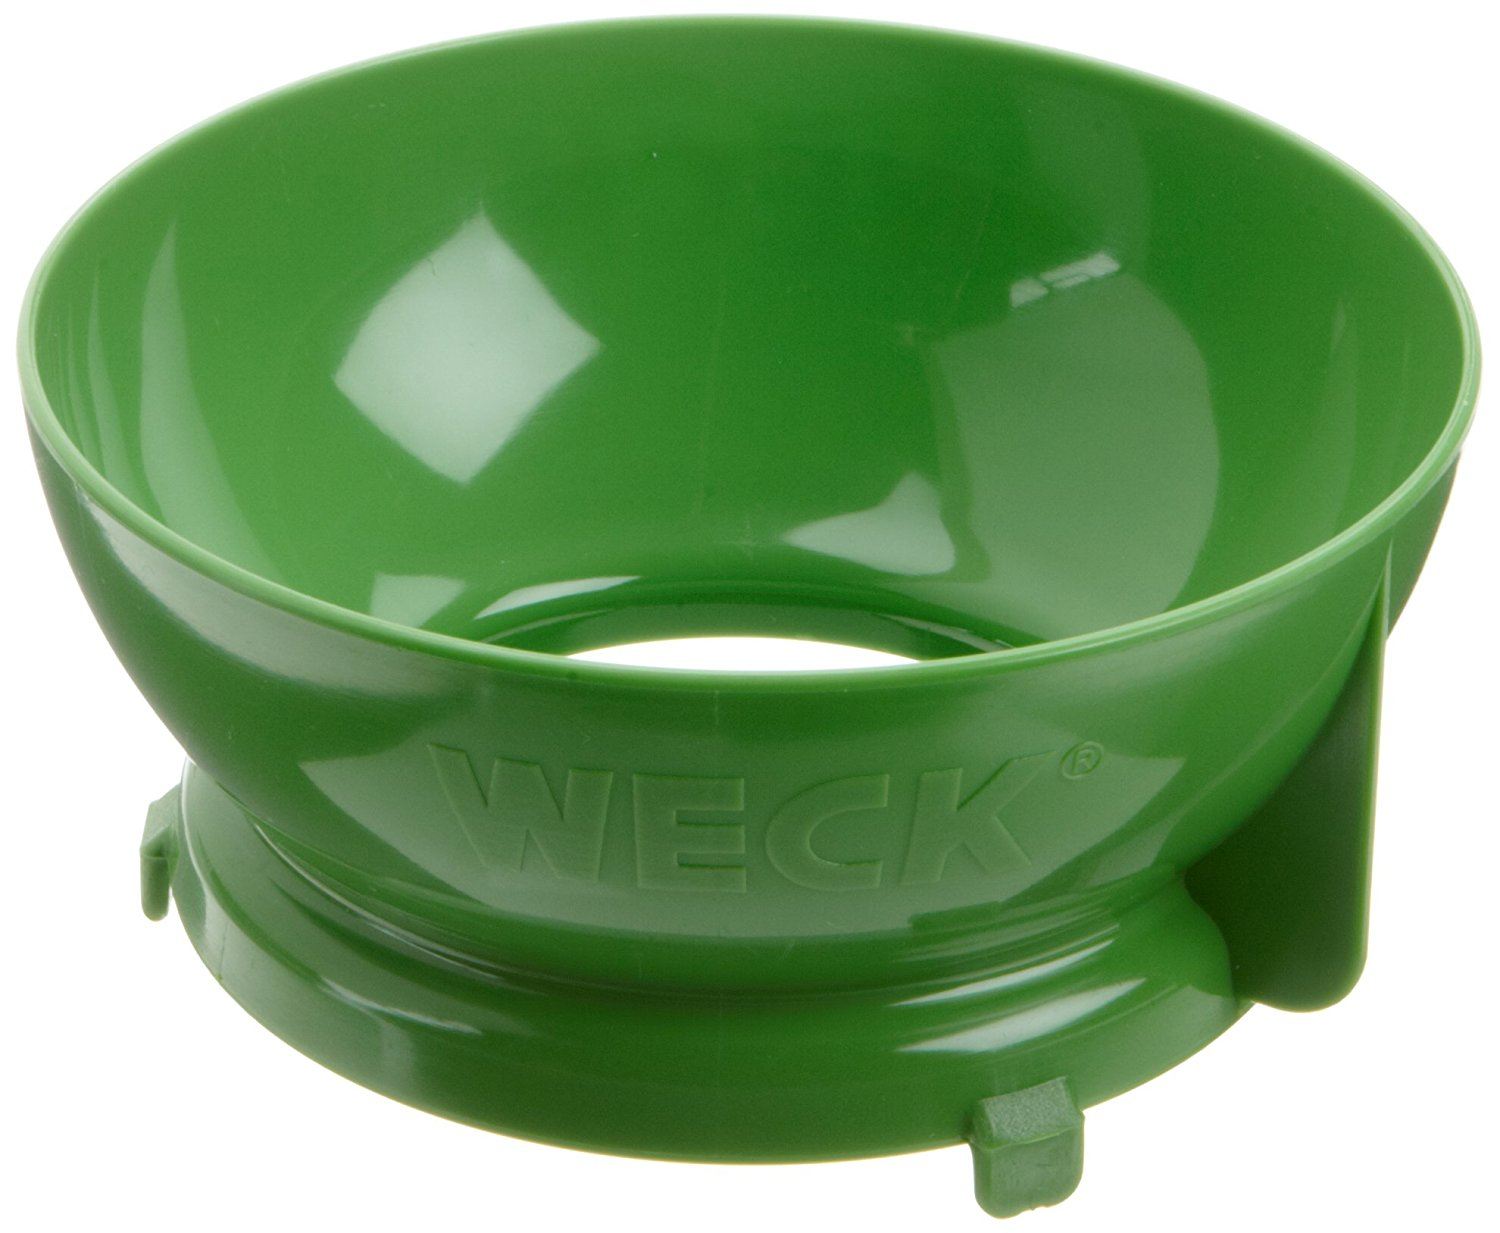 Weck Einfülltrichter (Material: Kunststoff, Grün, 15.4 x 14.4 x 7 cm, passend für Rundgläser & Einkochgläser)